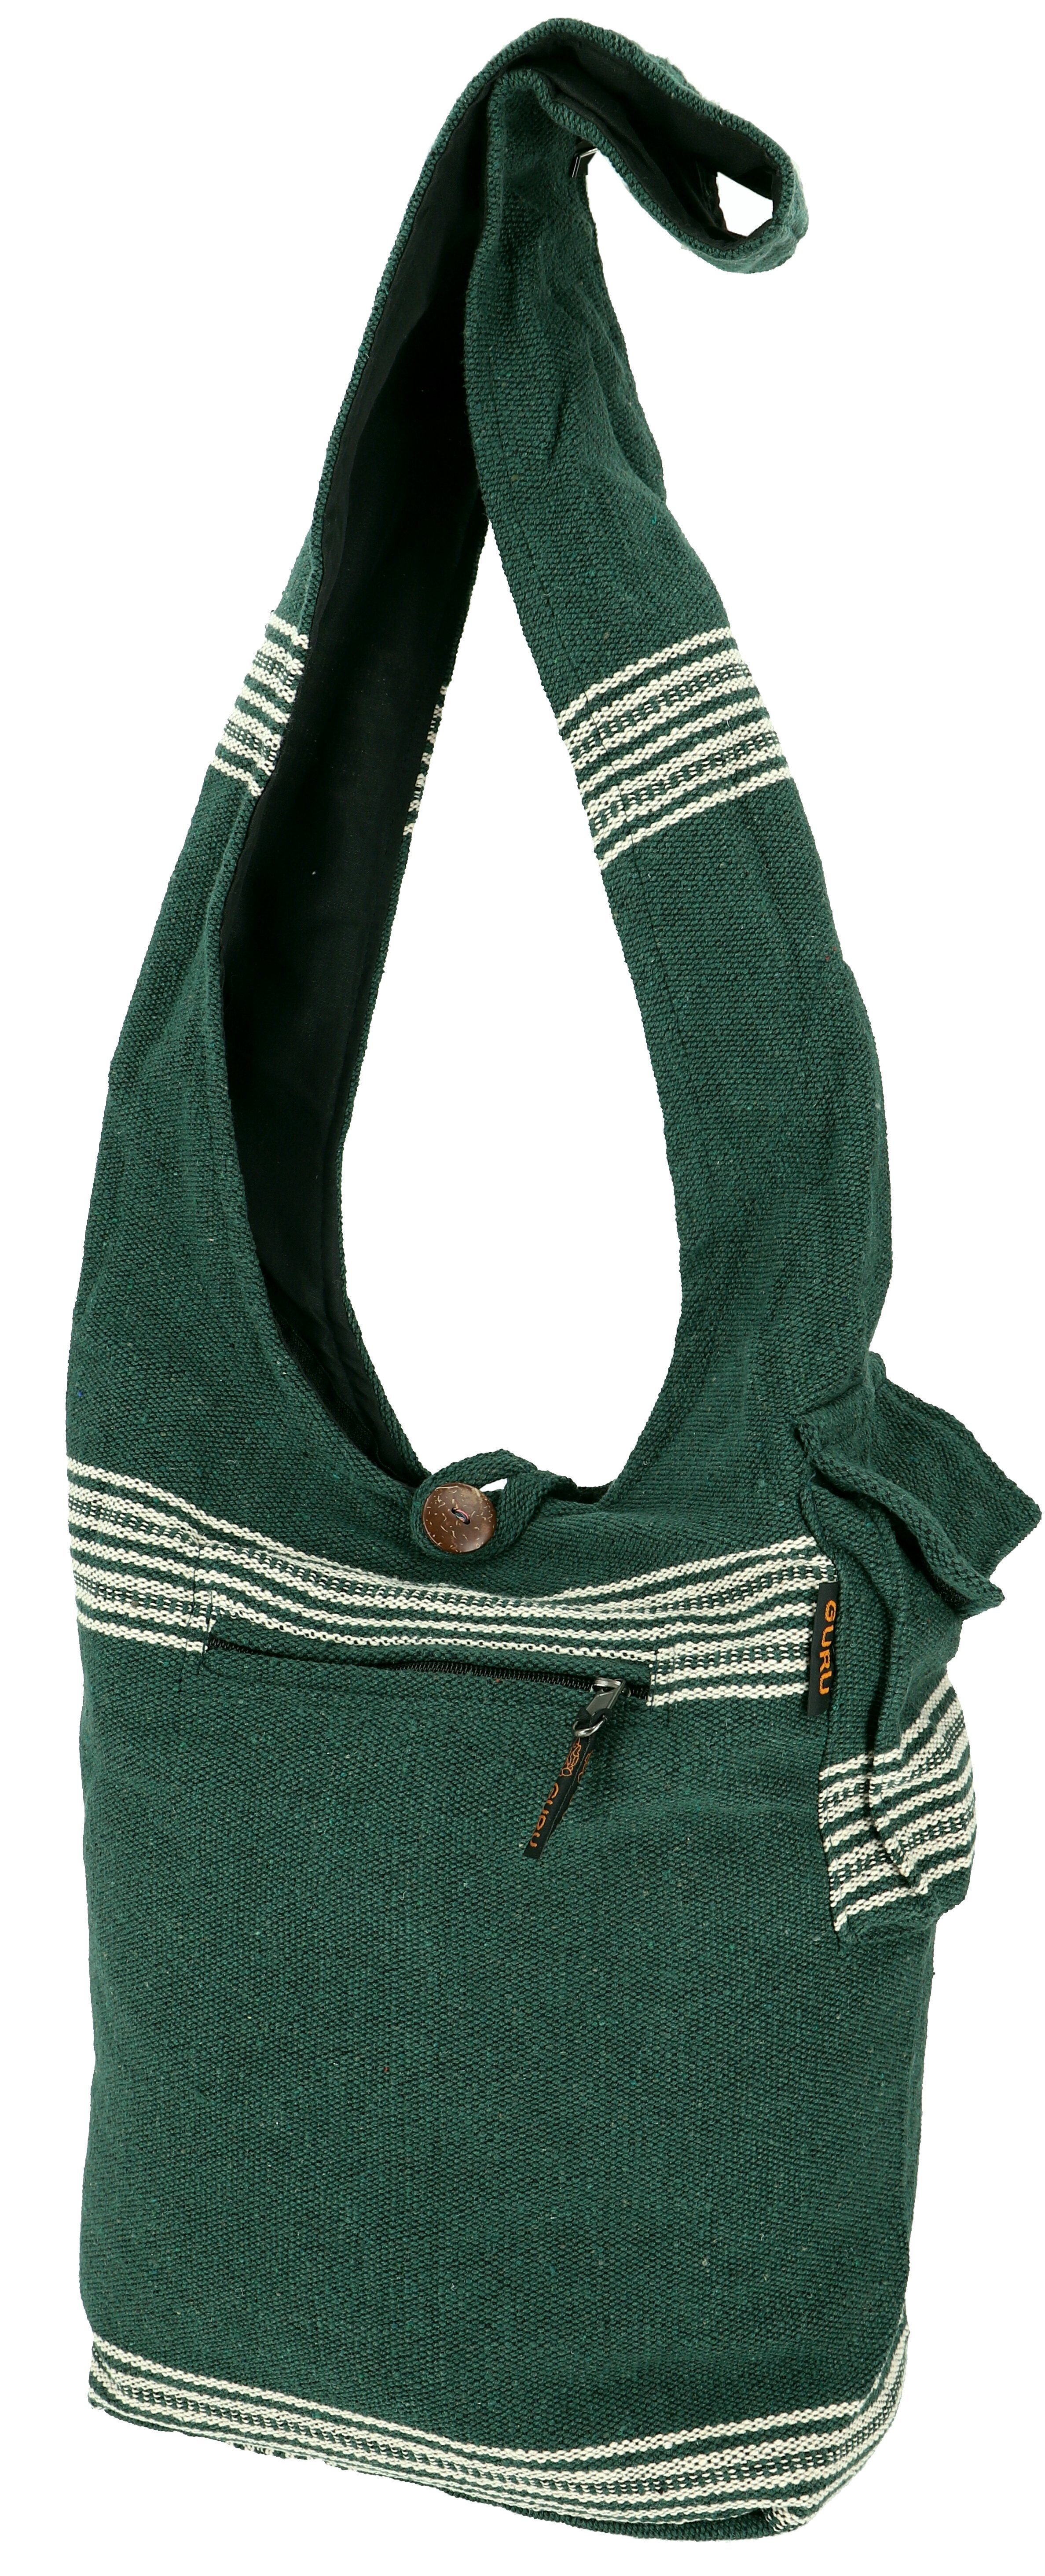 Schulterbeutel, Nepal Ethno - Schultertasche Guru-Shop Modell Tasche 11